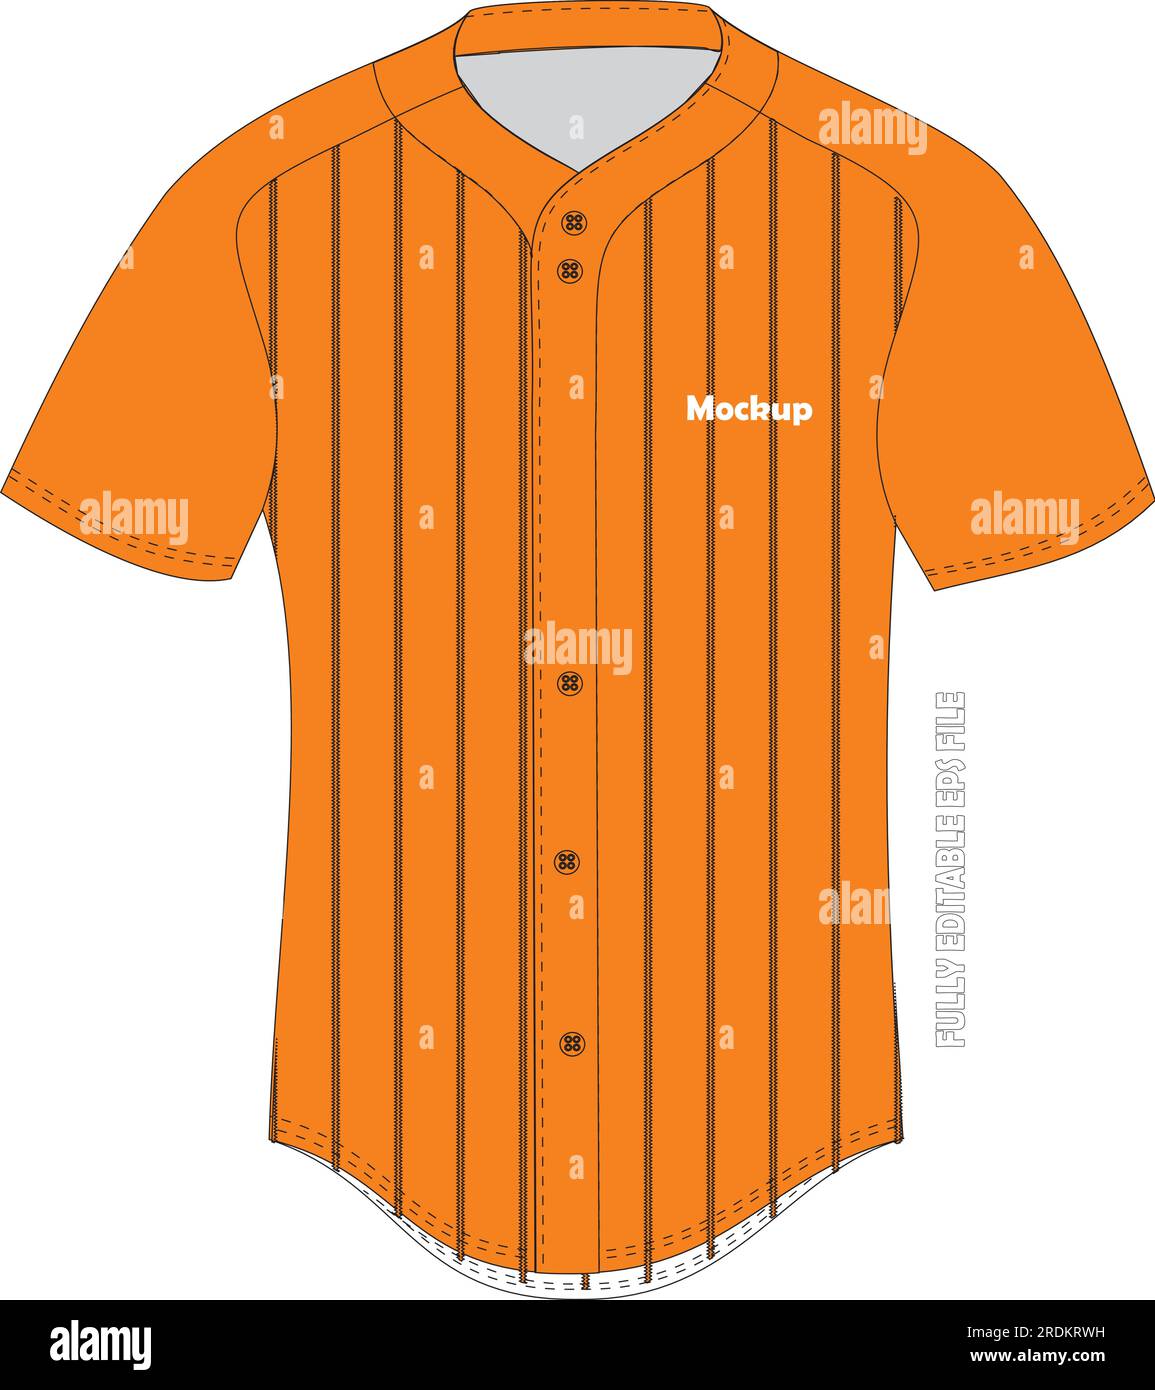 baseball jersey mockup